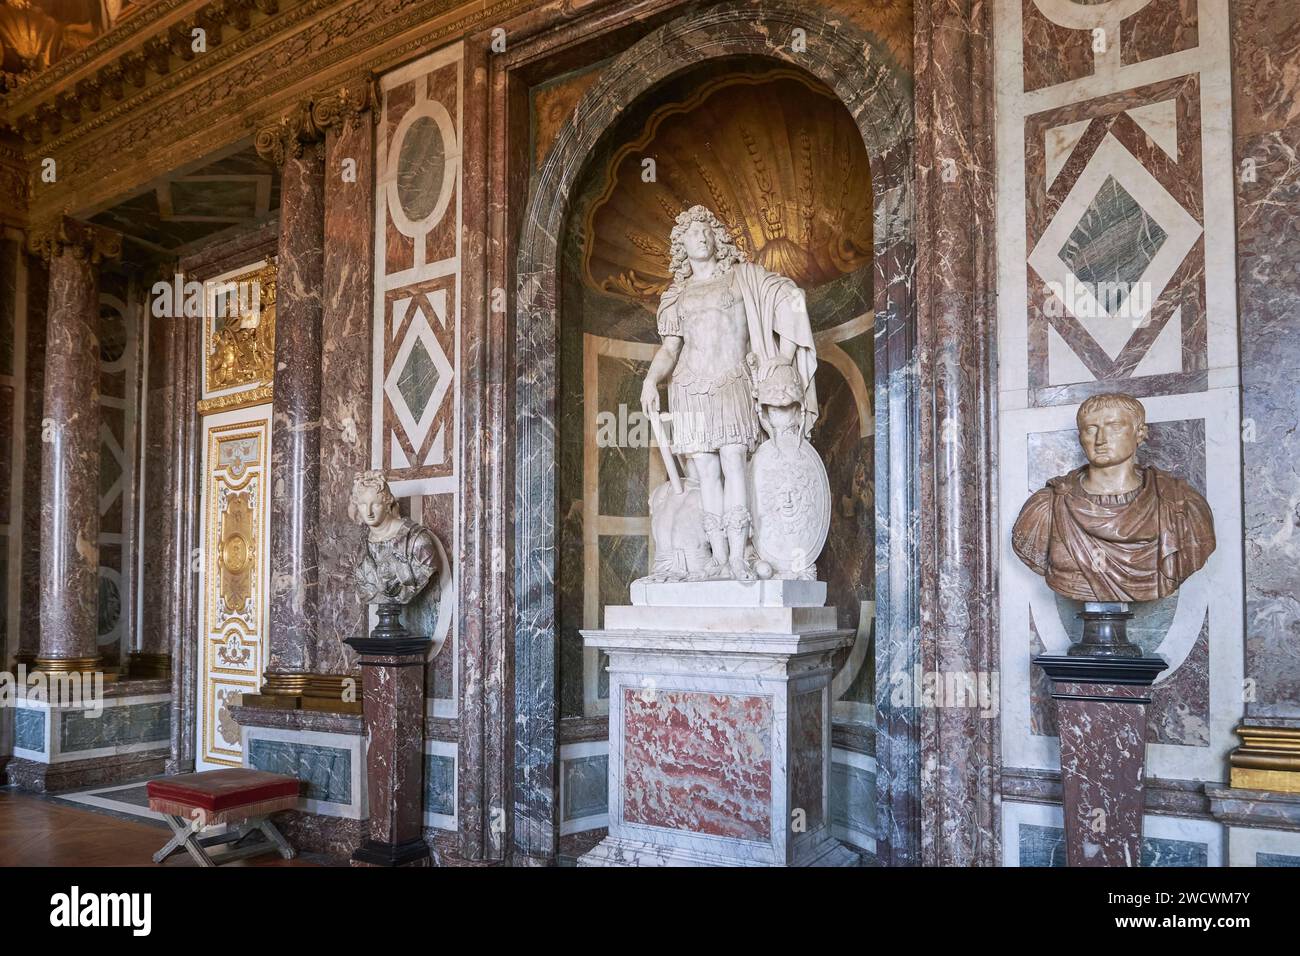 Frankreich, Yvelines, Versailles, Schloss von Versailles, das von der UNESCO zum Weltkulturerbe erklärt wurde, der Venus-Raum, die Statue von Louis XIV von Jean Varin zwischen 1665 und 1670 Stockfoto